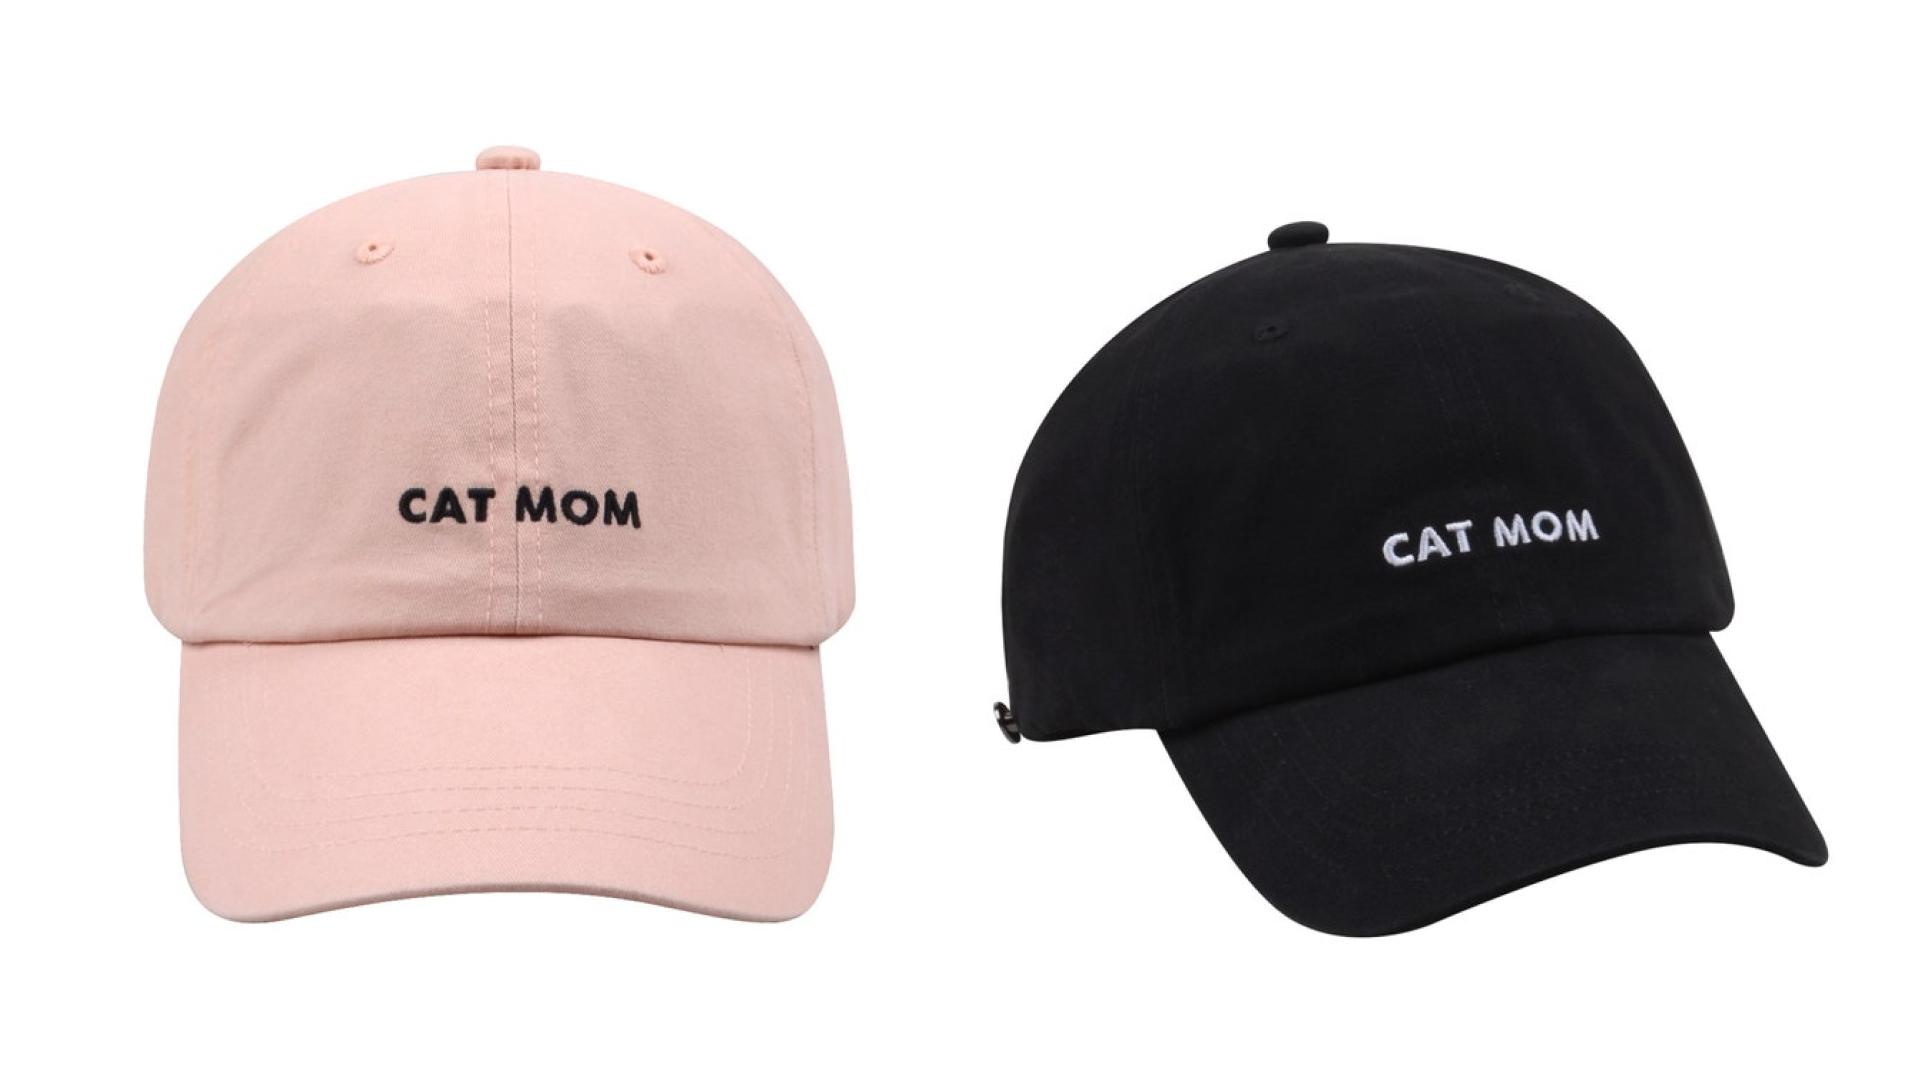 Cat mom hat